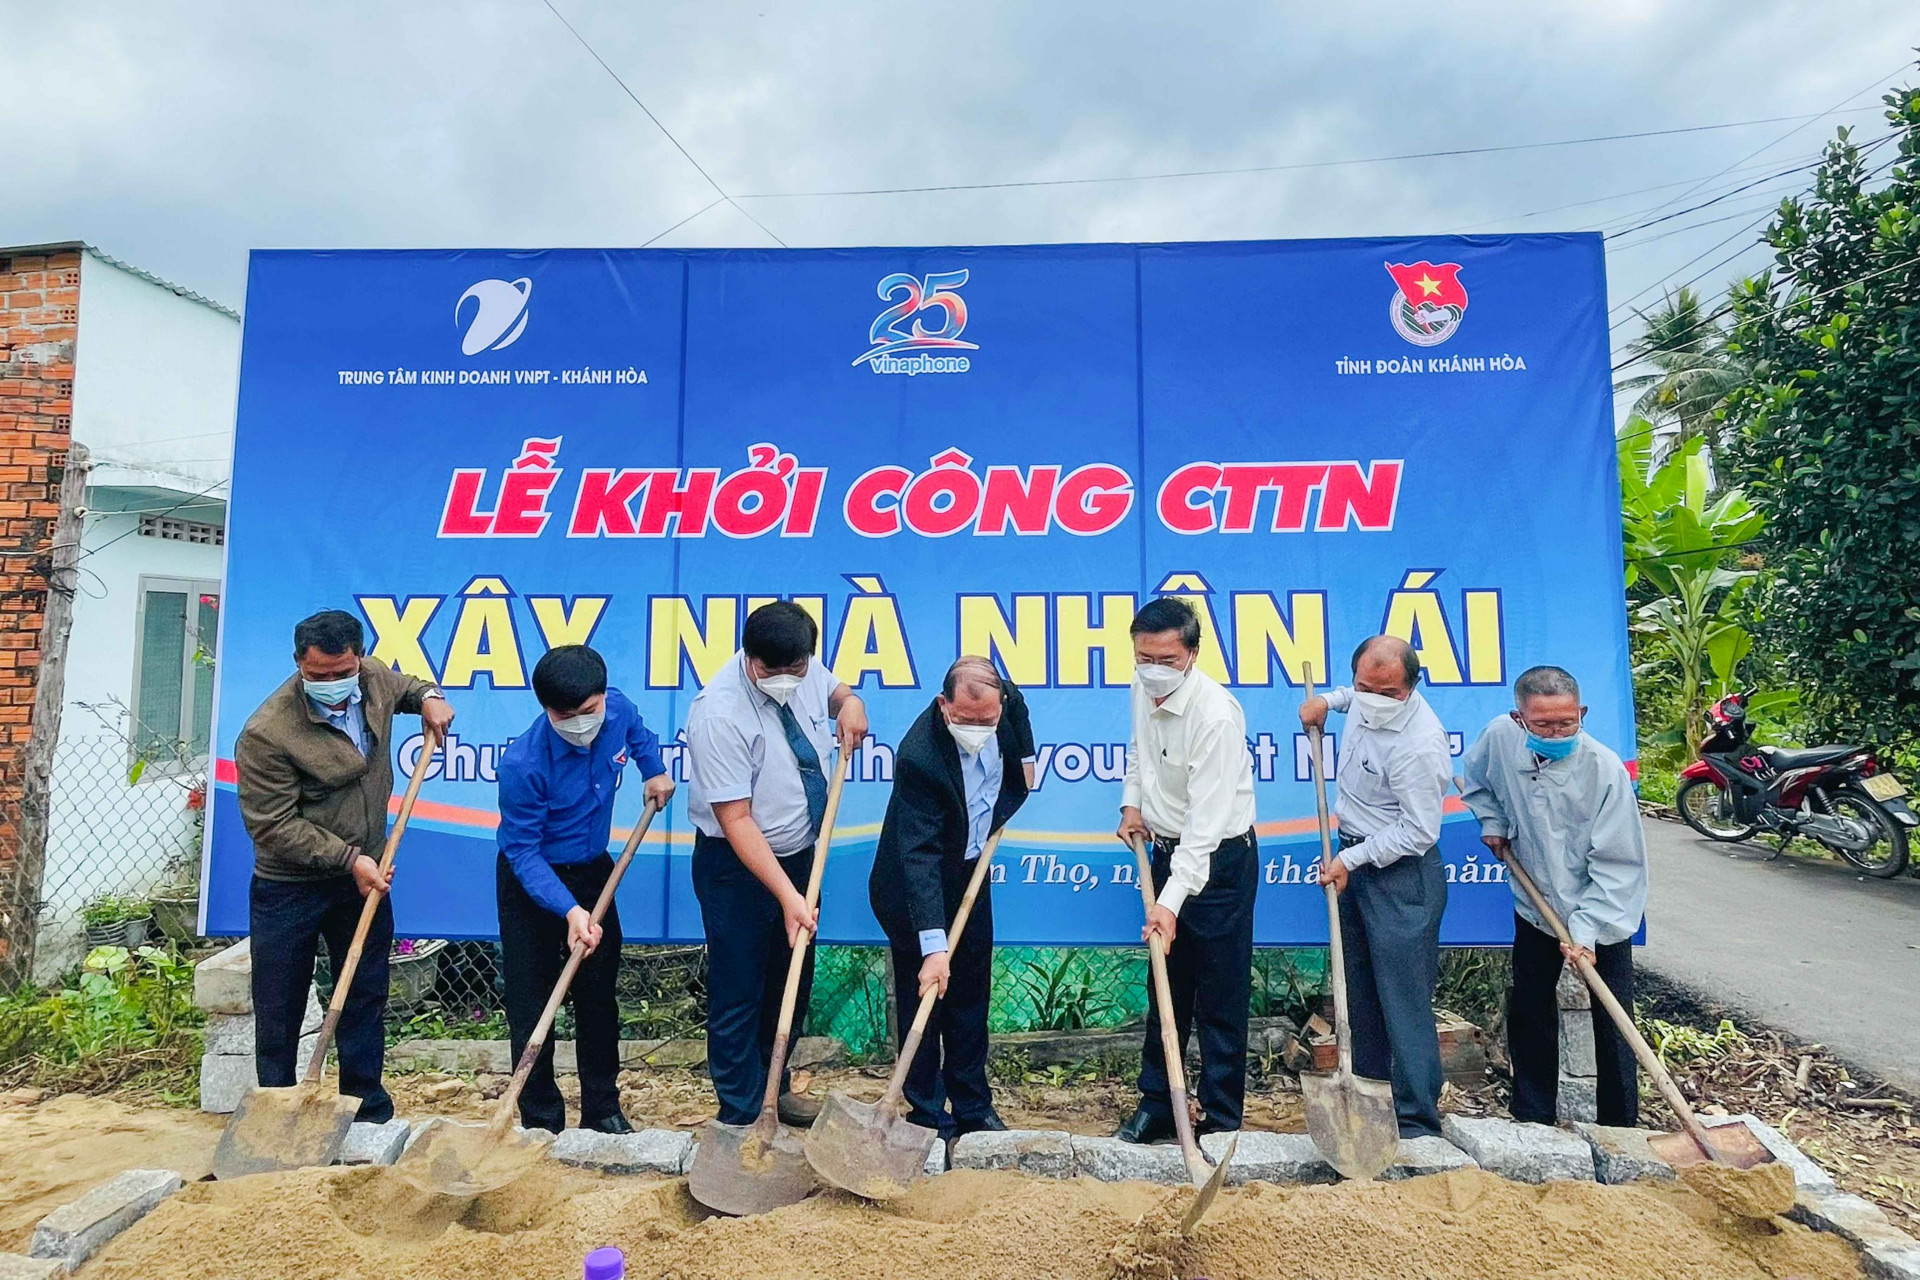 Lãnh đạo tỉnh cùng Tỉnh đoàn, Trung tâm kinh doanh VNPT Khánh Hoà khởi công công trình thanh niên Nhà nhân ái tại xã Diên Thọ